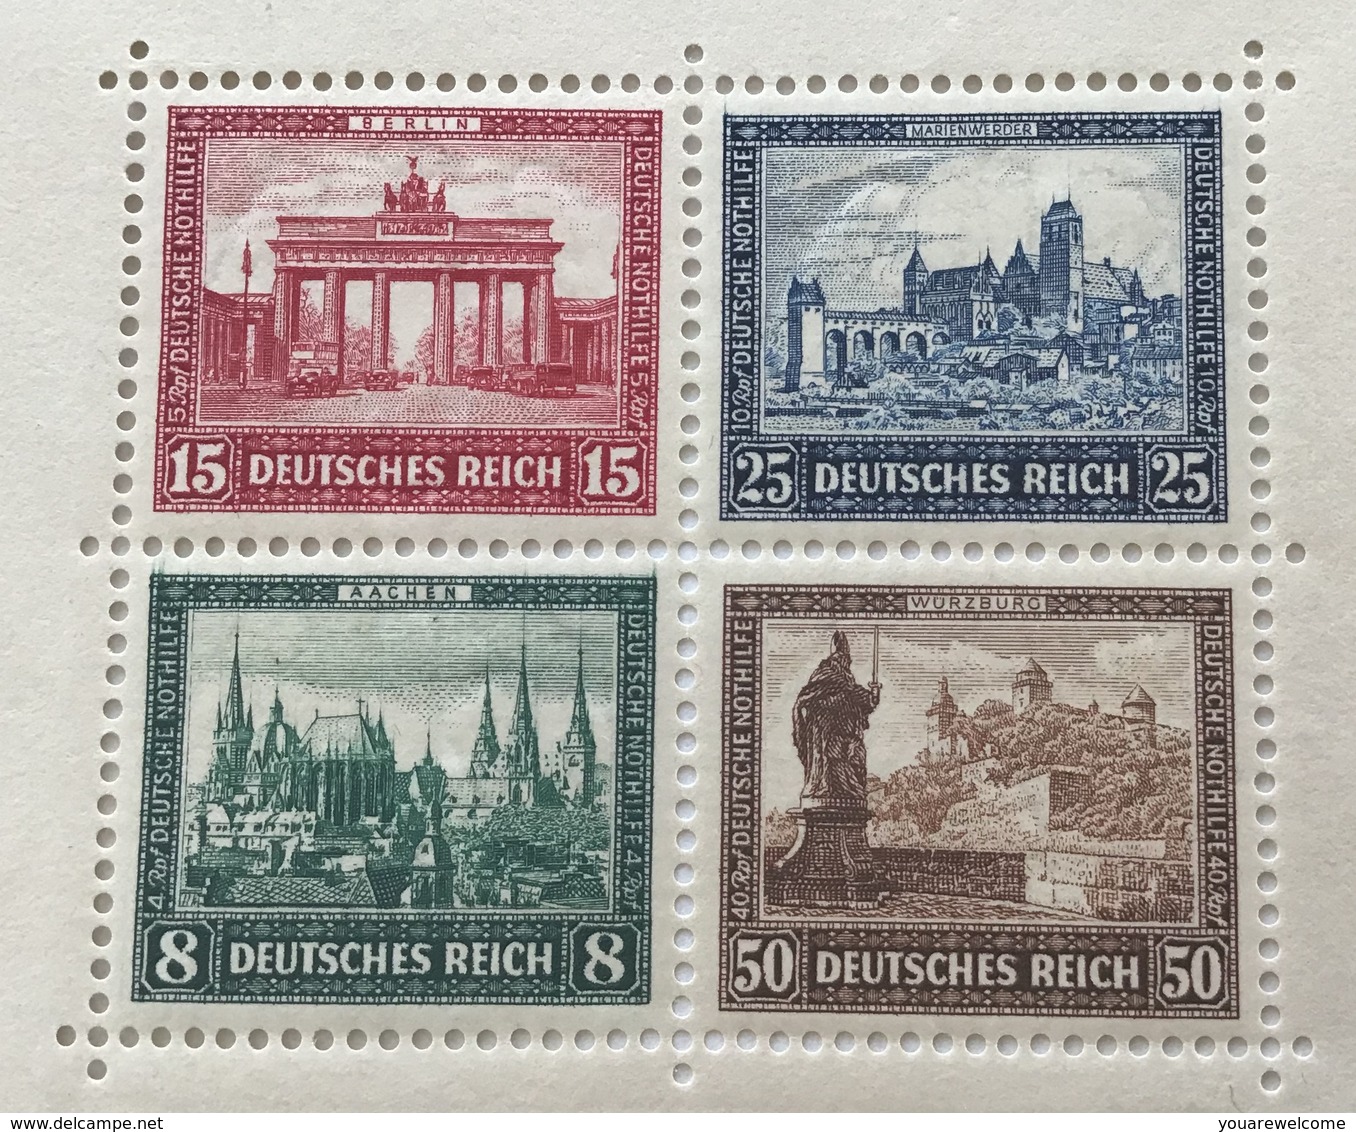 Deutsches Reich 1930 IPOSTA  Briefmarken Ausstellung Block 1** (bloc souvenir sheet architecture philatelic exhibition